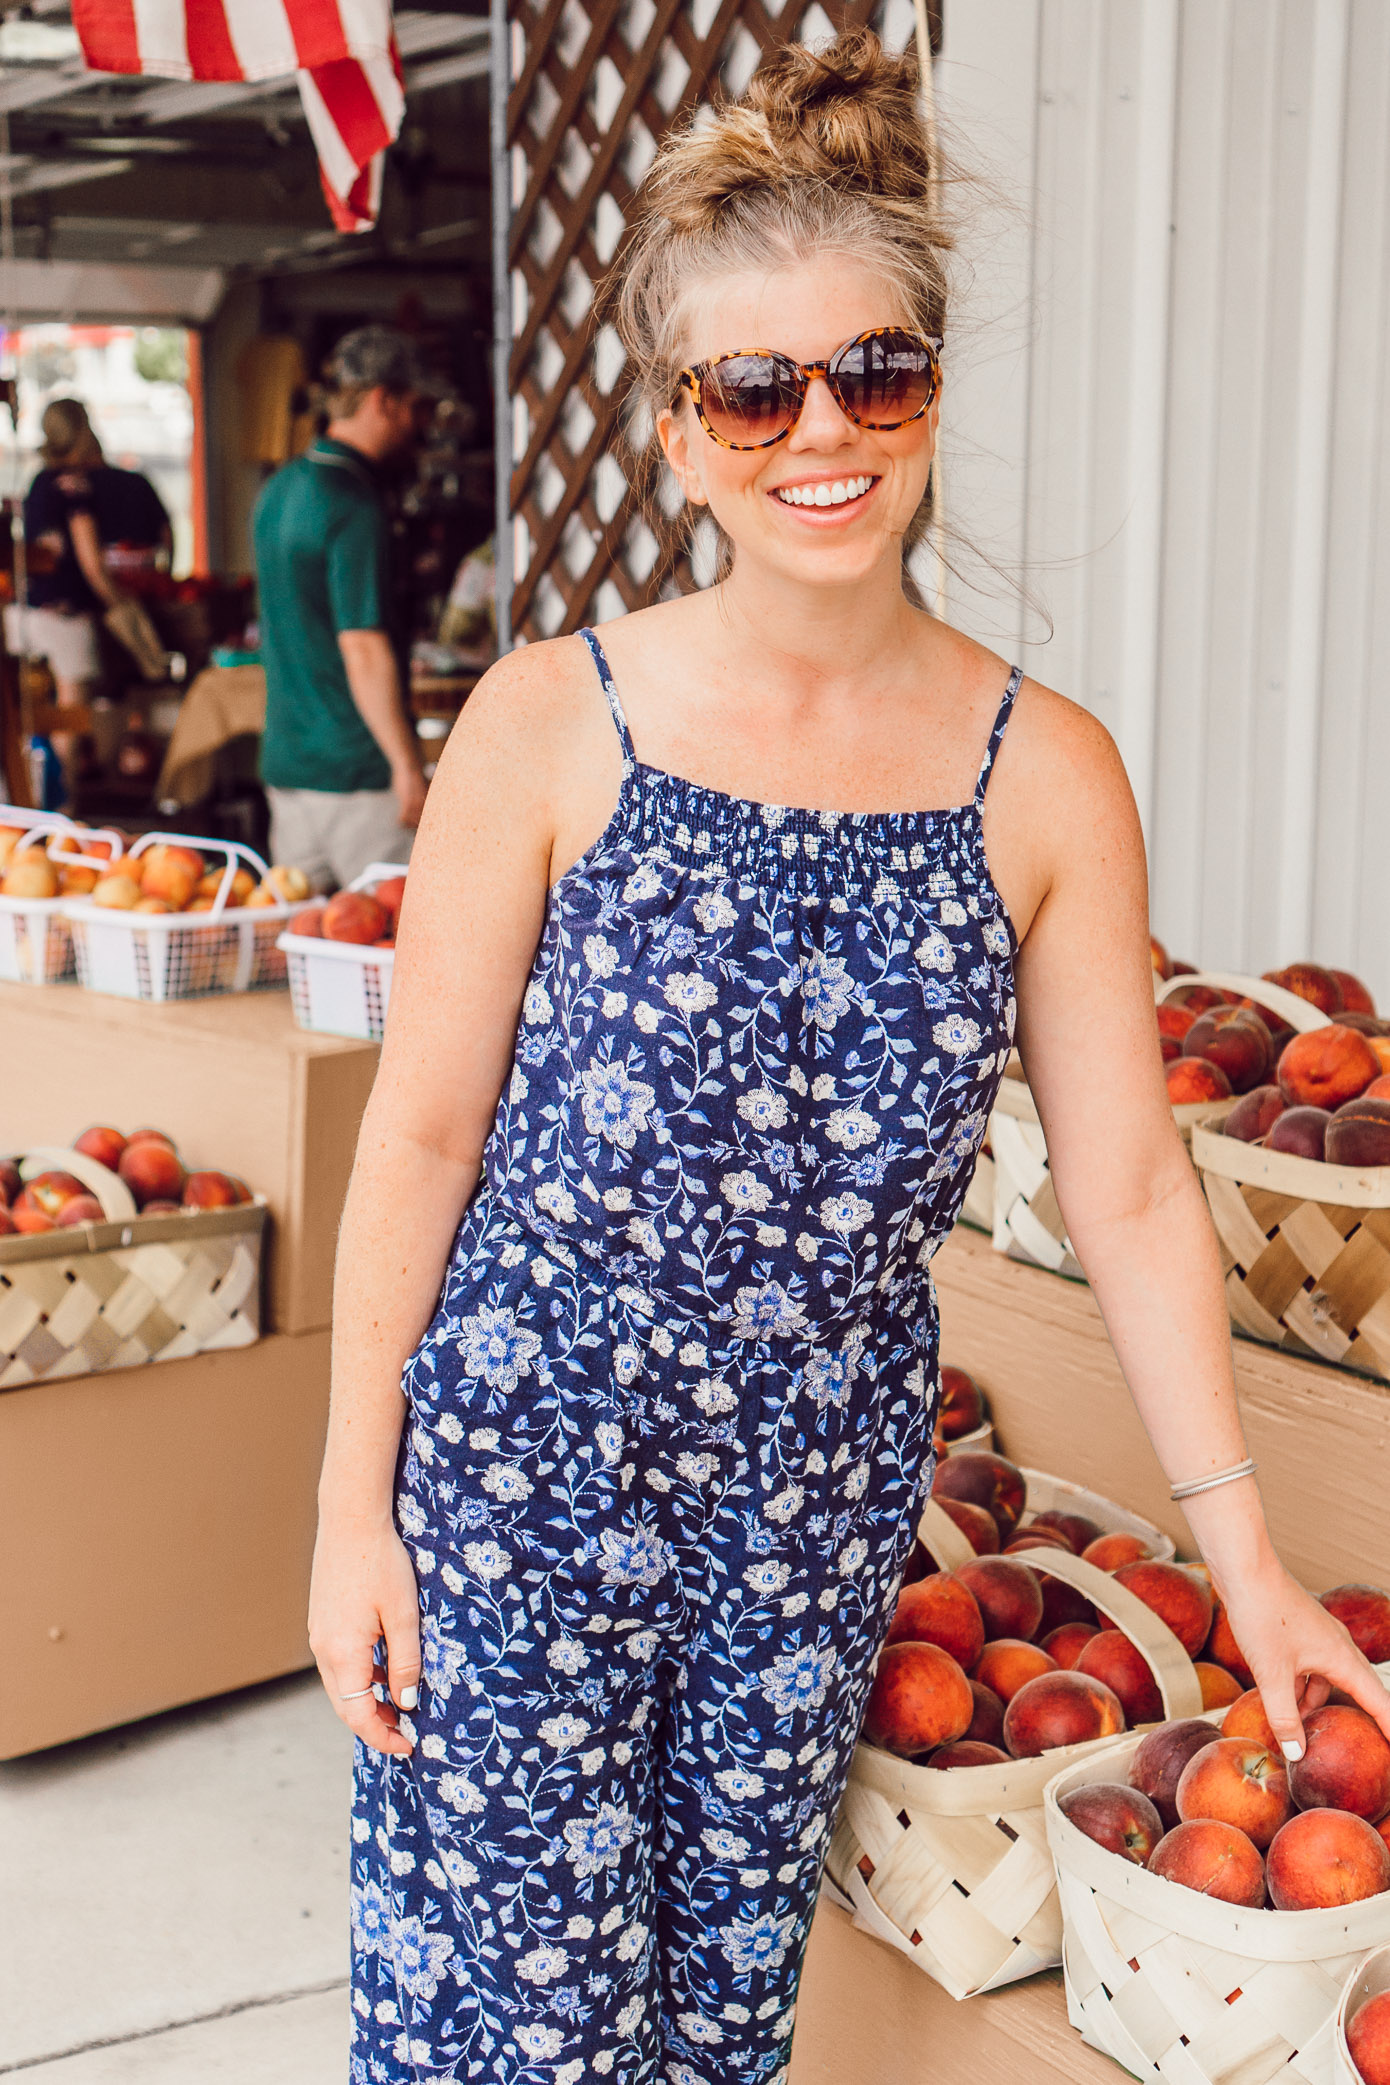 Athens GA Travel Diary | Farmer's Markets on the way to Athens GA featured on Louella Reese #Athens #ExploreGA